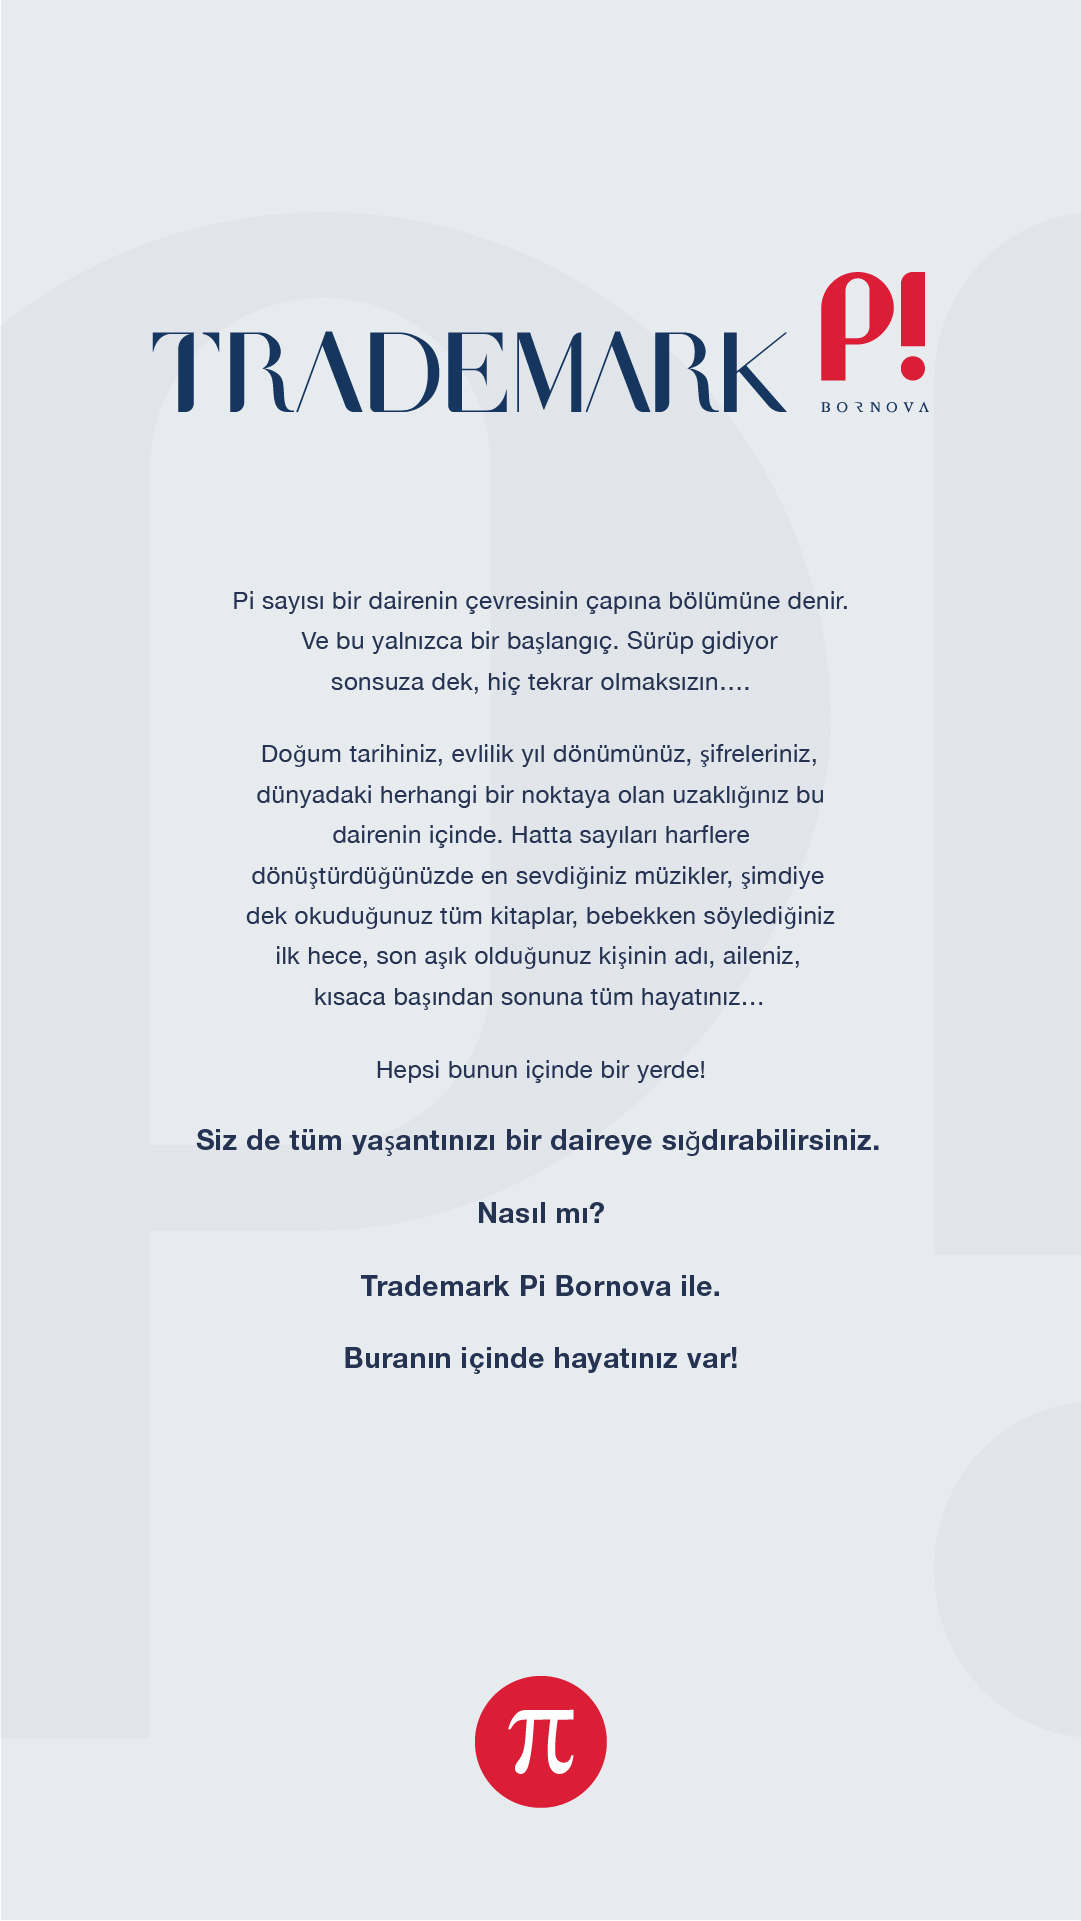 Trademark Pi Bornova - Siz de tüm yaşantınızı bir daireye sığdırabilirsiniz. Nasıl mı? Trademark Pi Bornova ile. Buranın içinde hayatınız var!